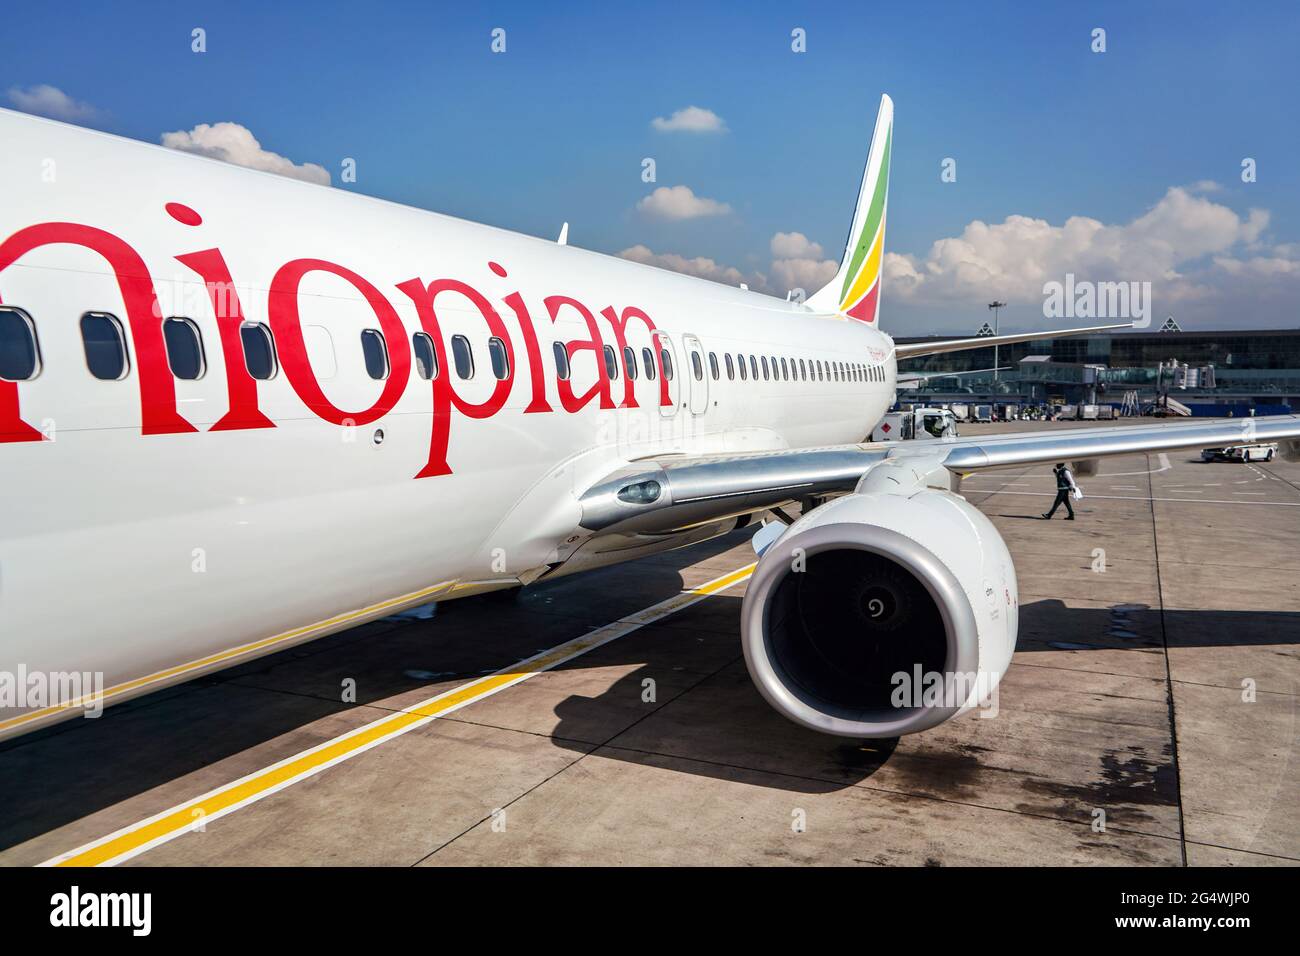 Addis Ababa, Ethiopie - 23 avril 2019: Compagnies aériennes éthiopiennes Boeing 737 attendant au sol le jour ensoleillé, bâtiment de l'aéroport international de Bole à backgrou Banque D'Images